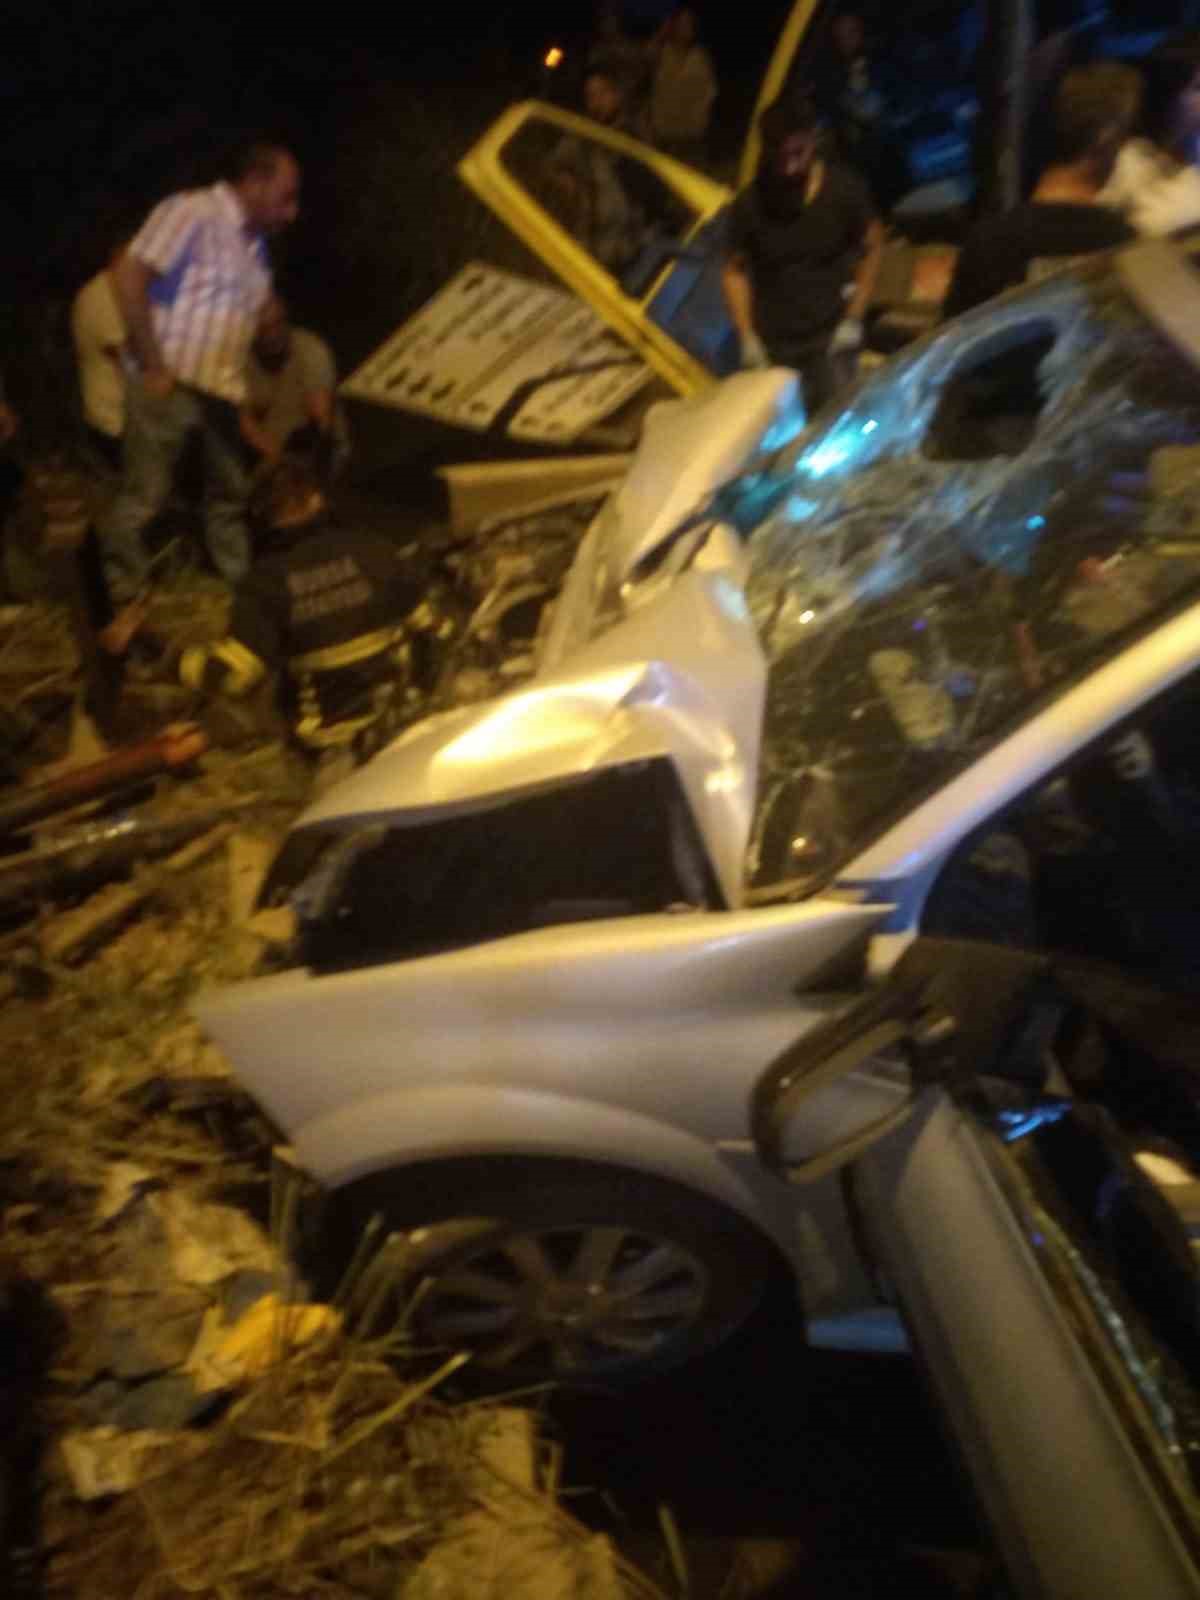 Bursa’da belediye otobüsüyle otomobil çarpıştı: 2 ölü